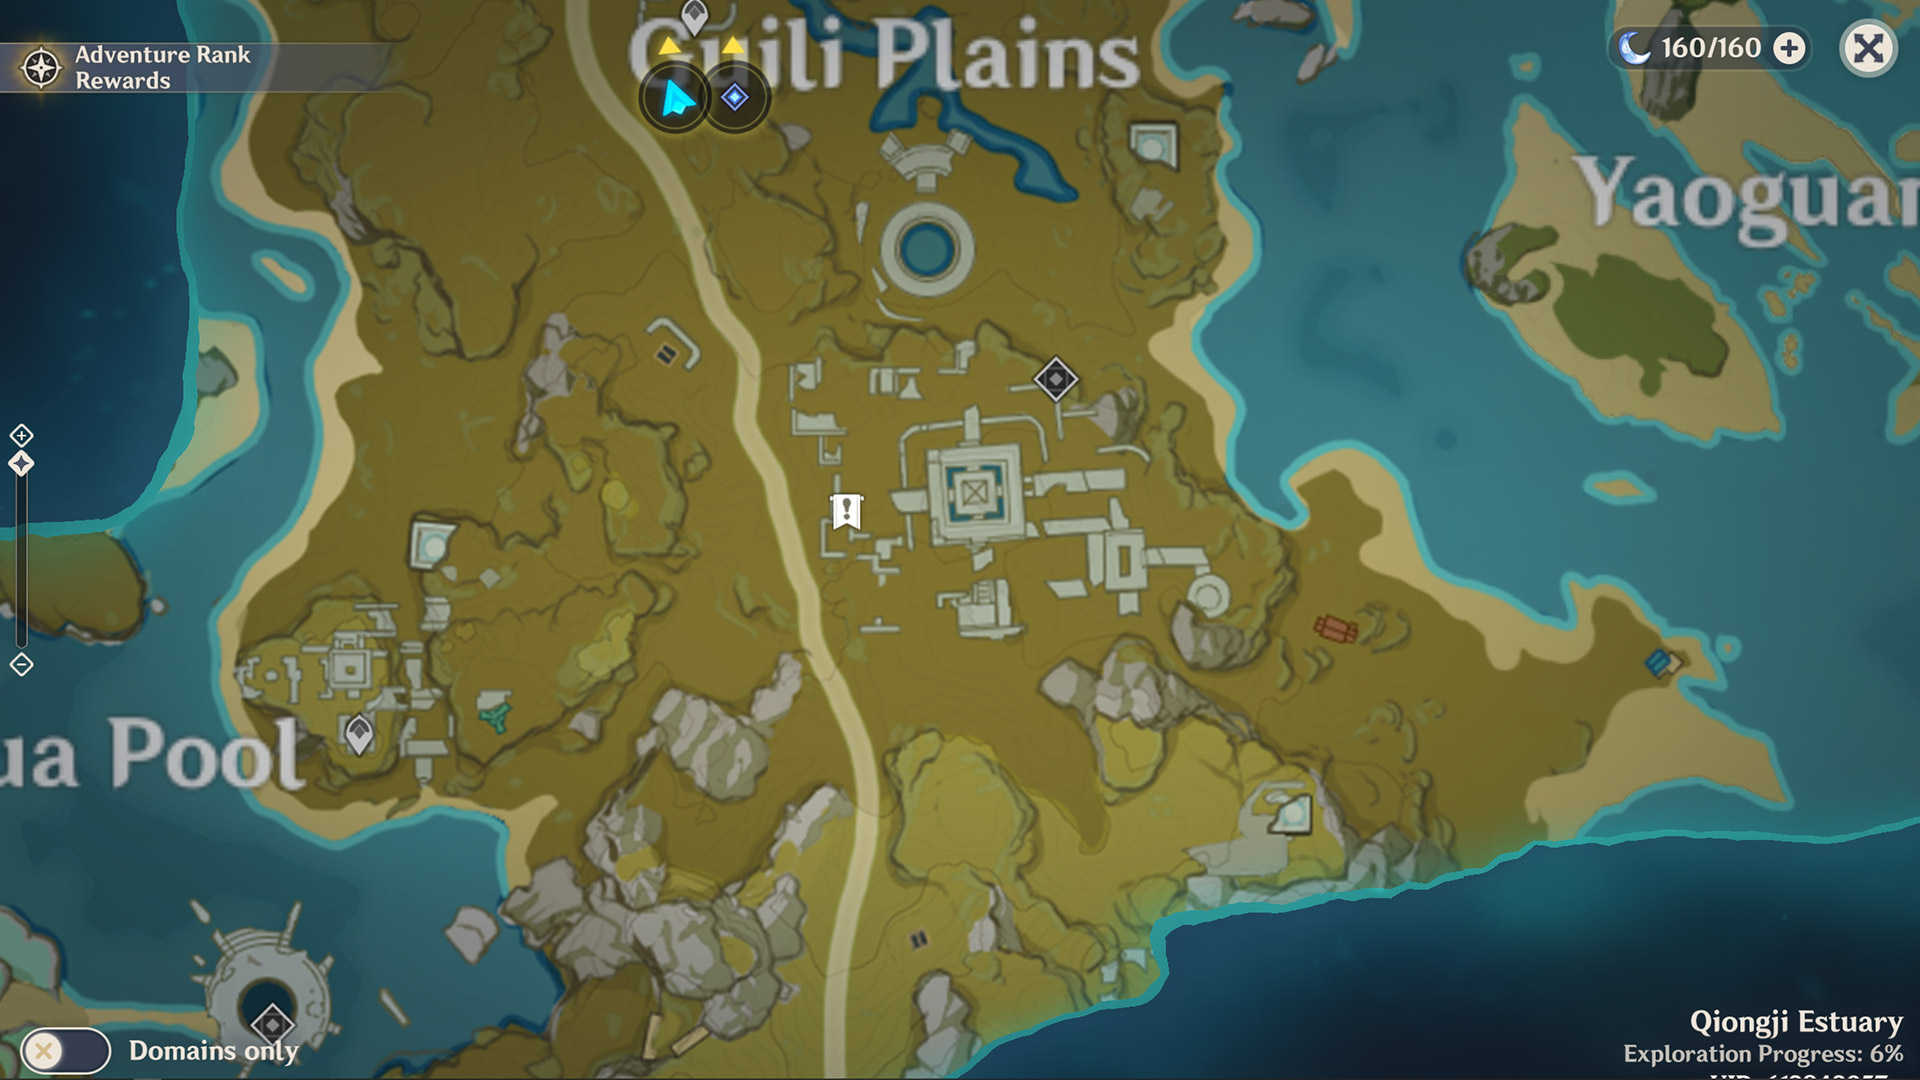 genshin impact treasure lost found quest guide location soraya